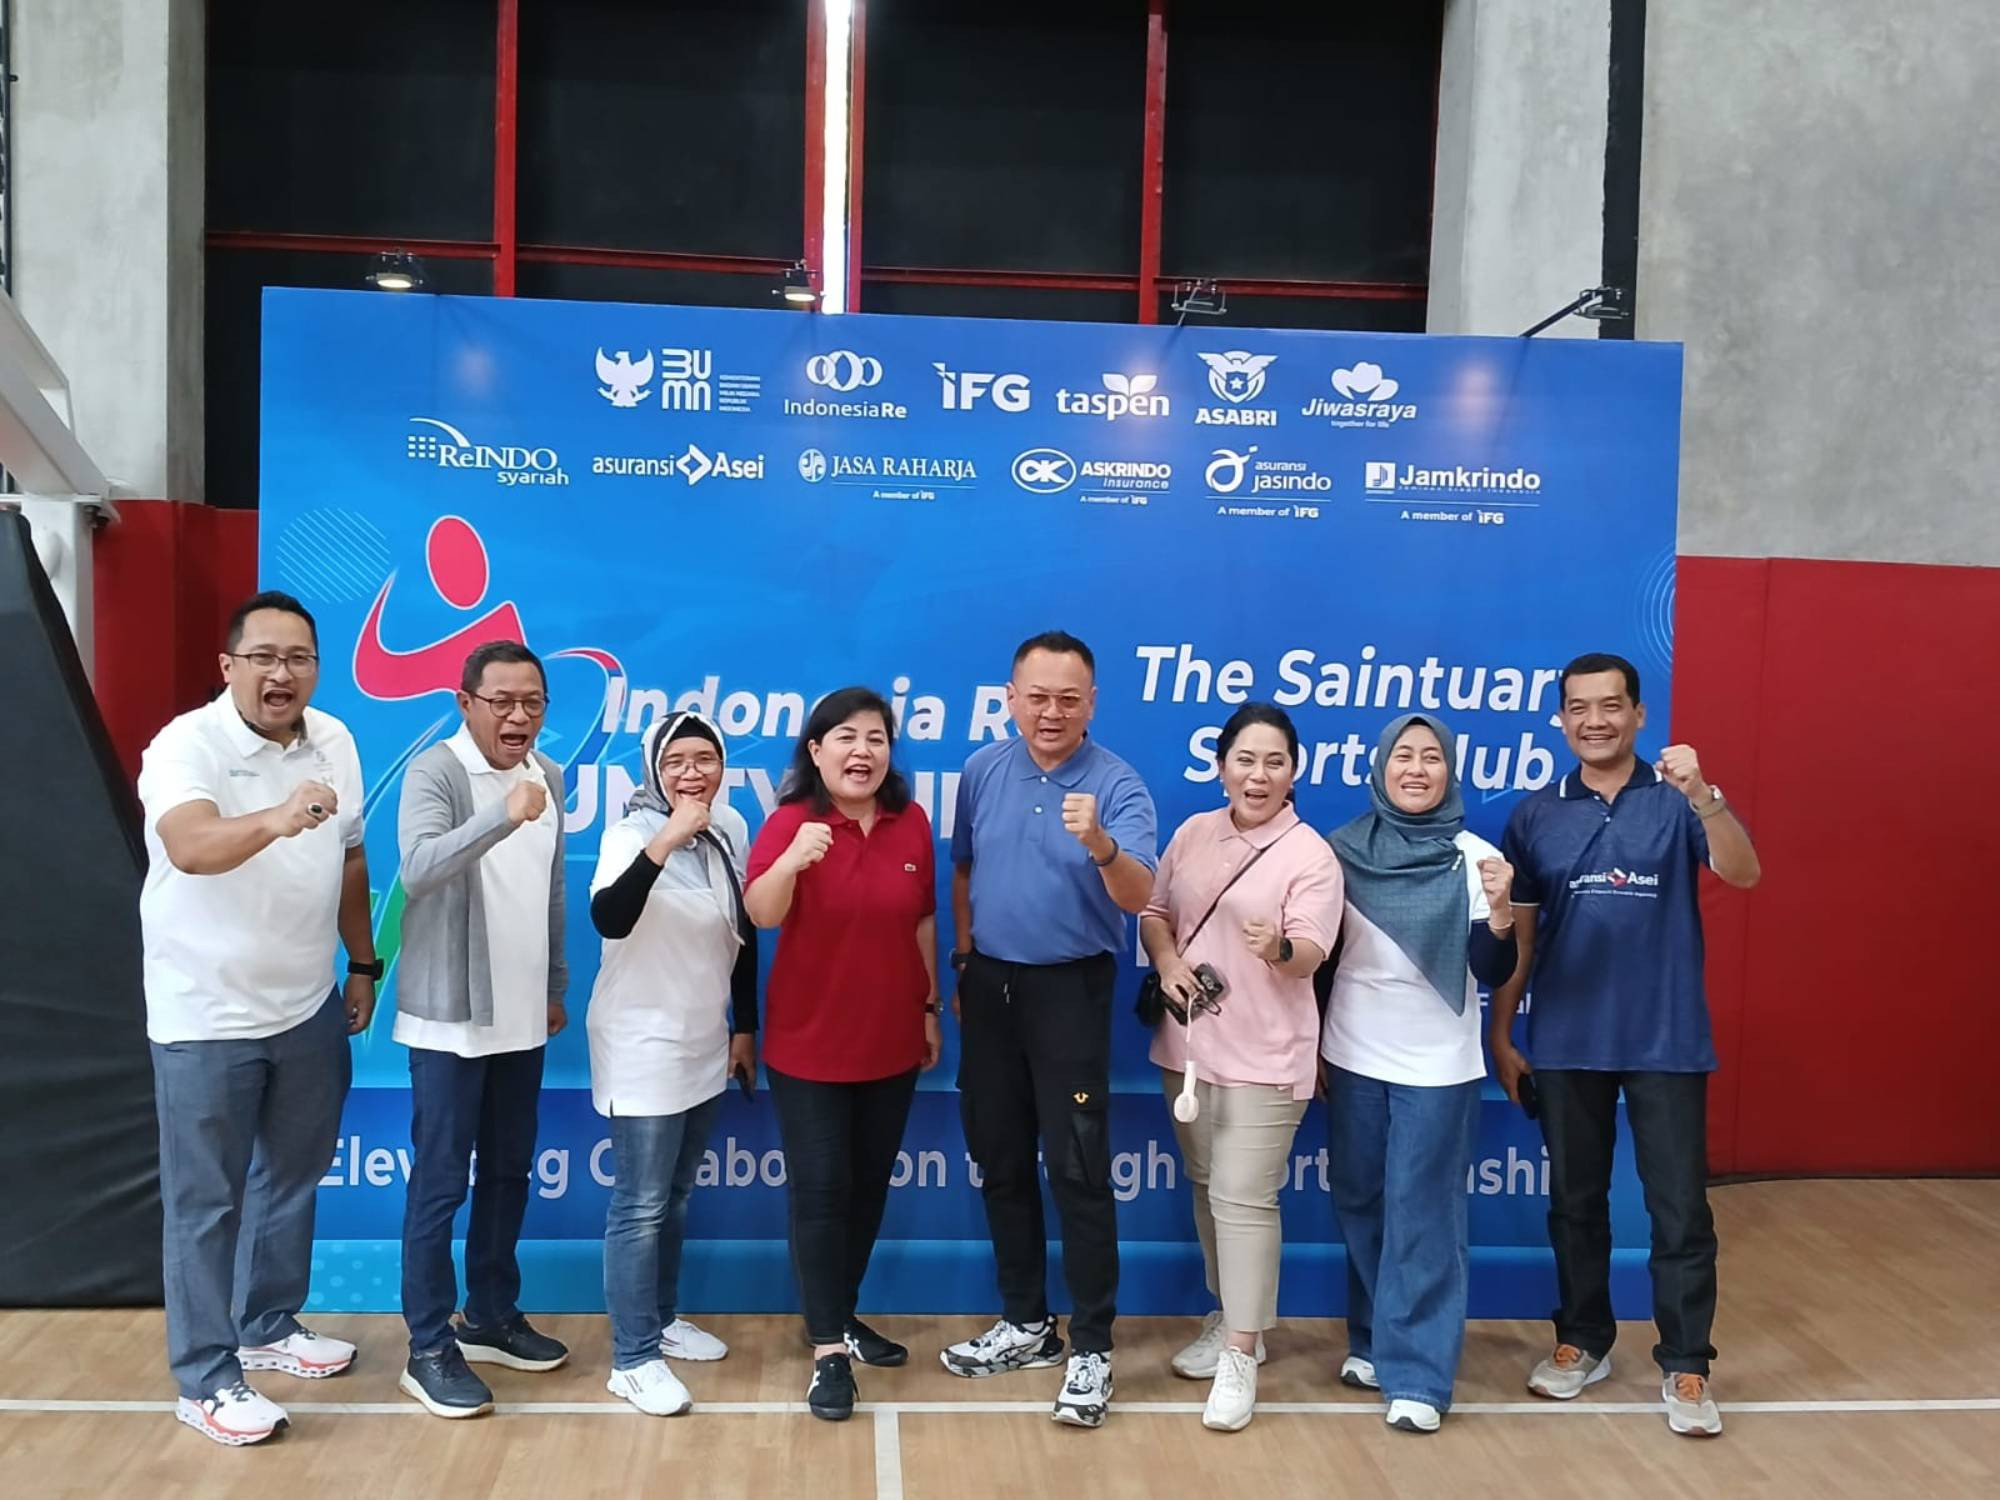 Indonesia Re Gelar Kompetisi Futsal Antar-BUMN, Total Hadiah Puluhan Juta Rupiah - JPNN.com